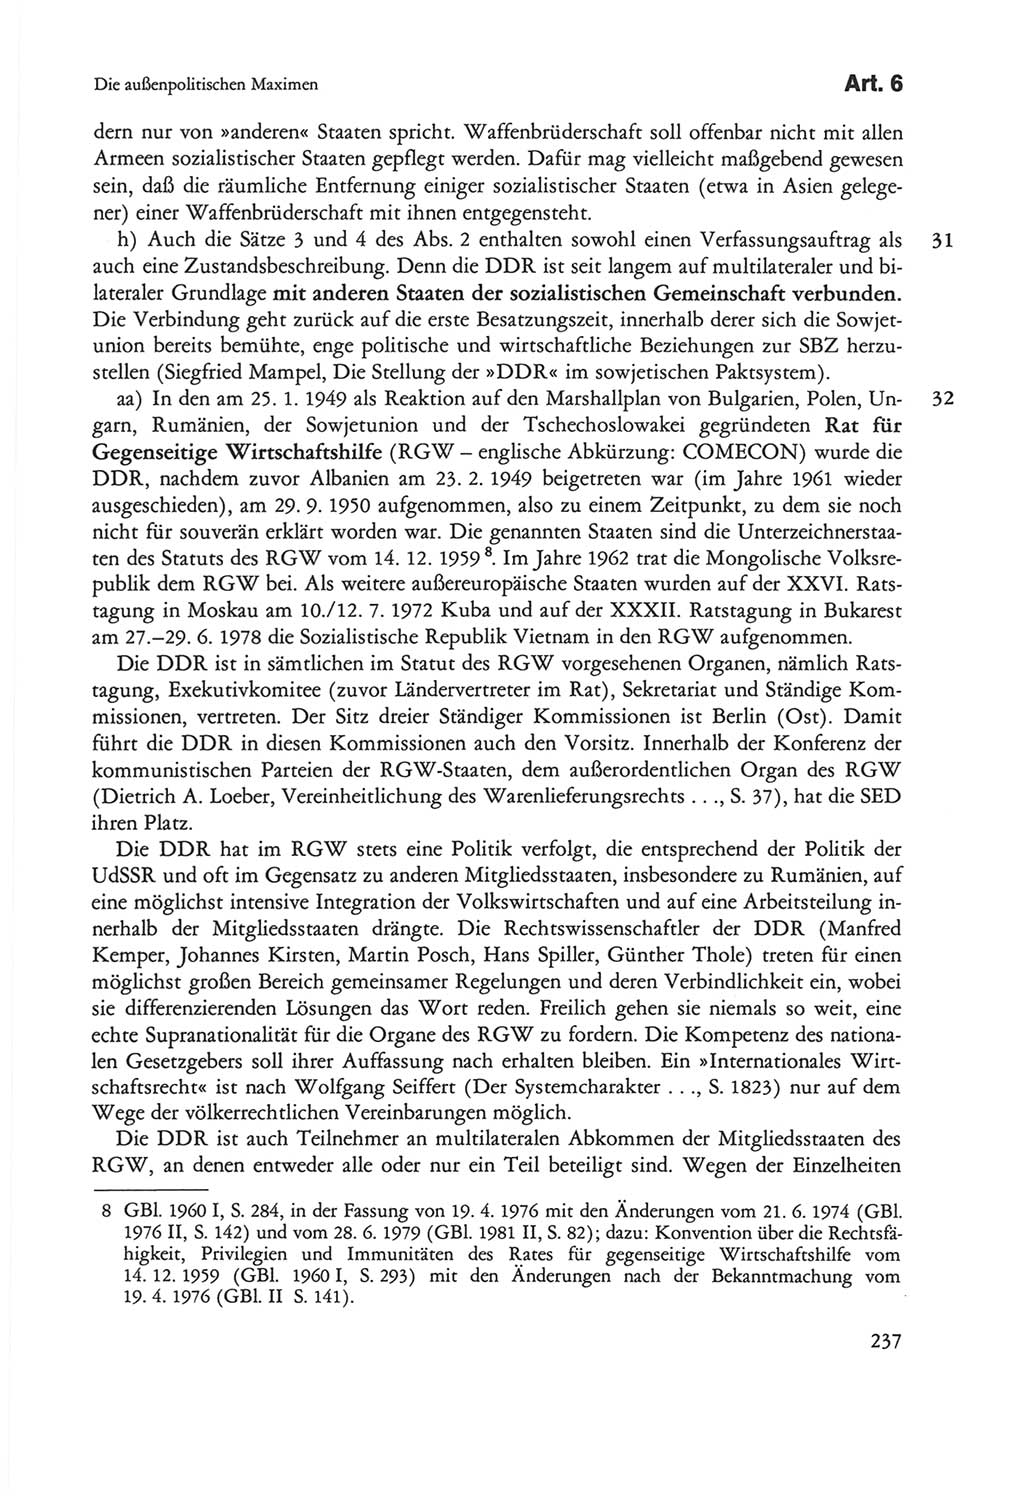 Die sozialistische Verfassung der Deutschen Demokratischen Republik (DDR), Kommentar mit einem Nachtrag 1997, Seite 237 (Soz. Verf. DDR Komm. Nachtr. 1997, S. 237)